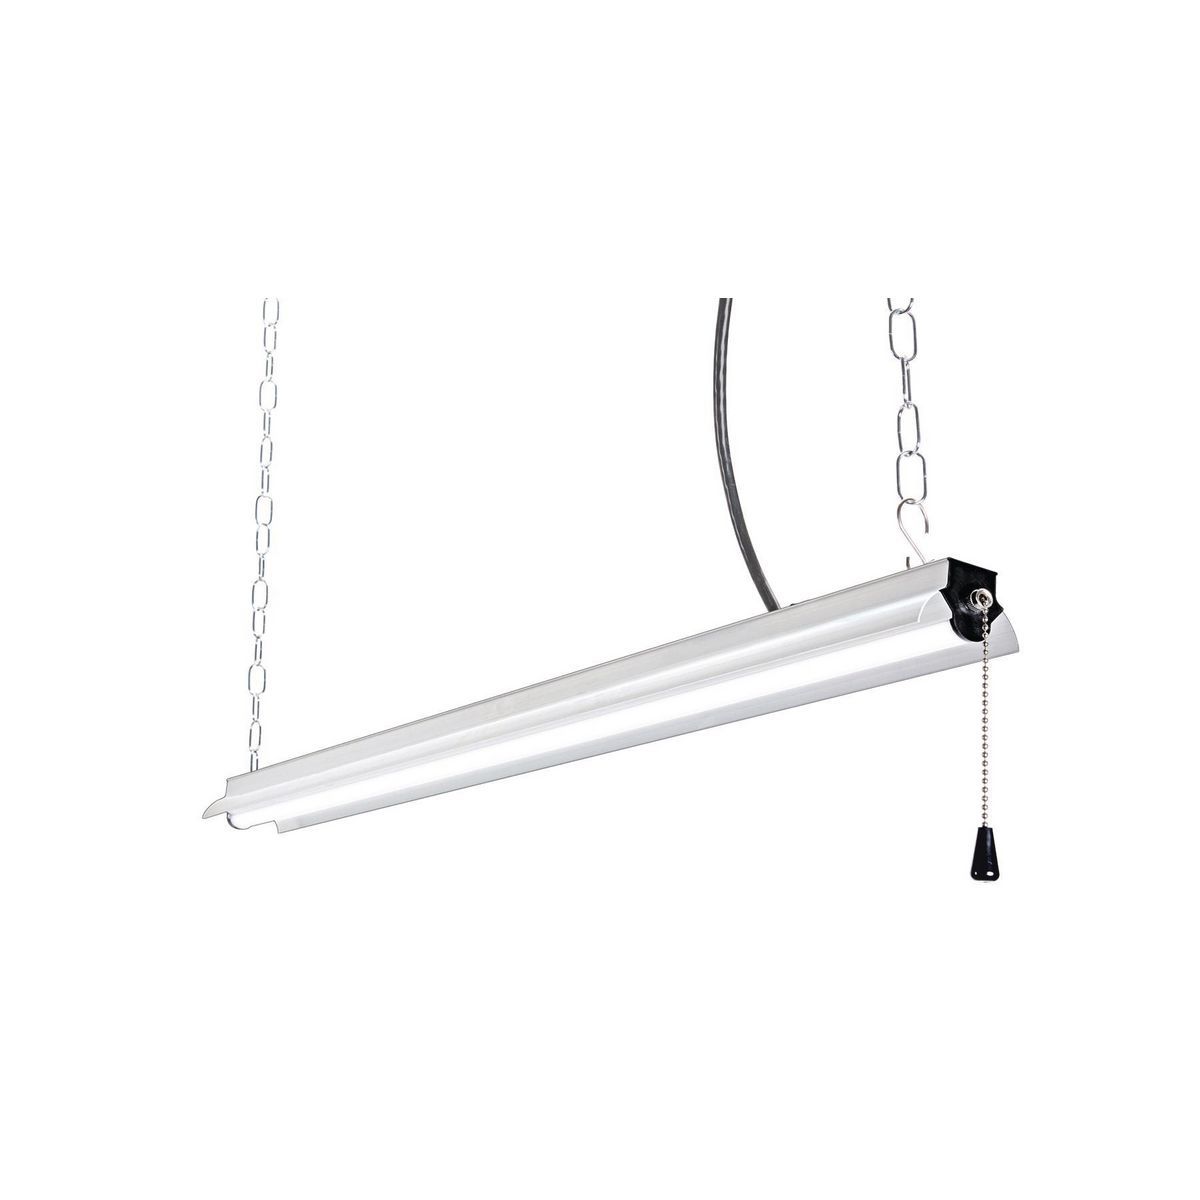 BRAUN 5000 Lumen 4 ft. LED Hanging Shop Light